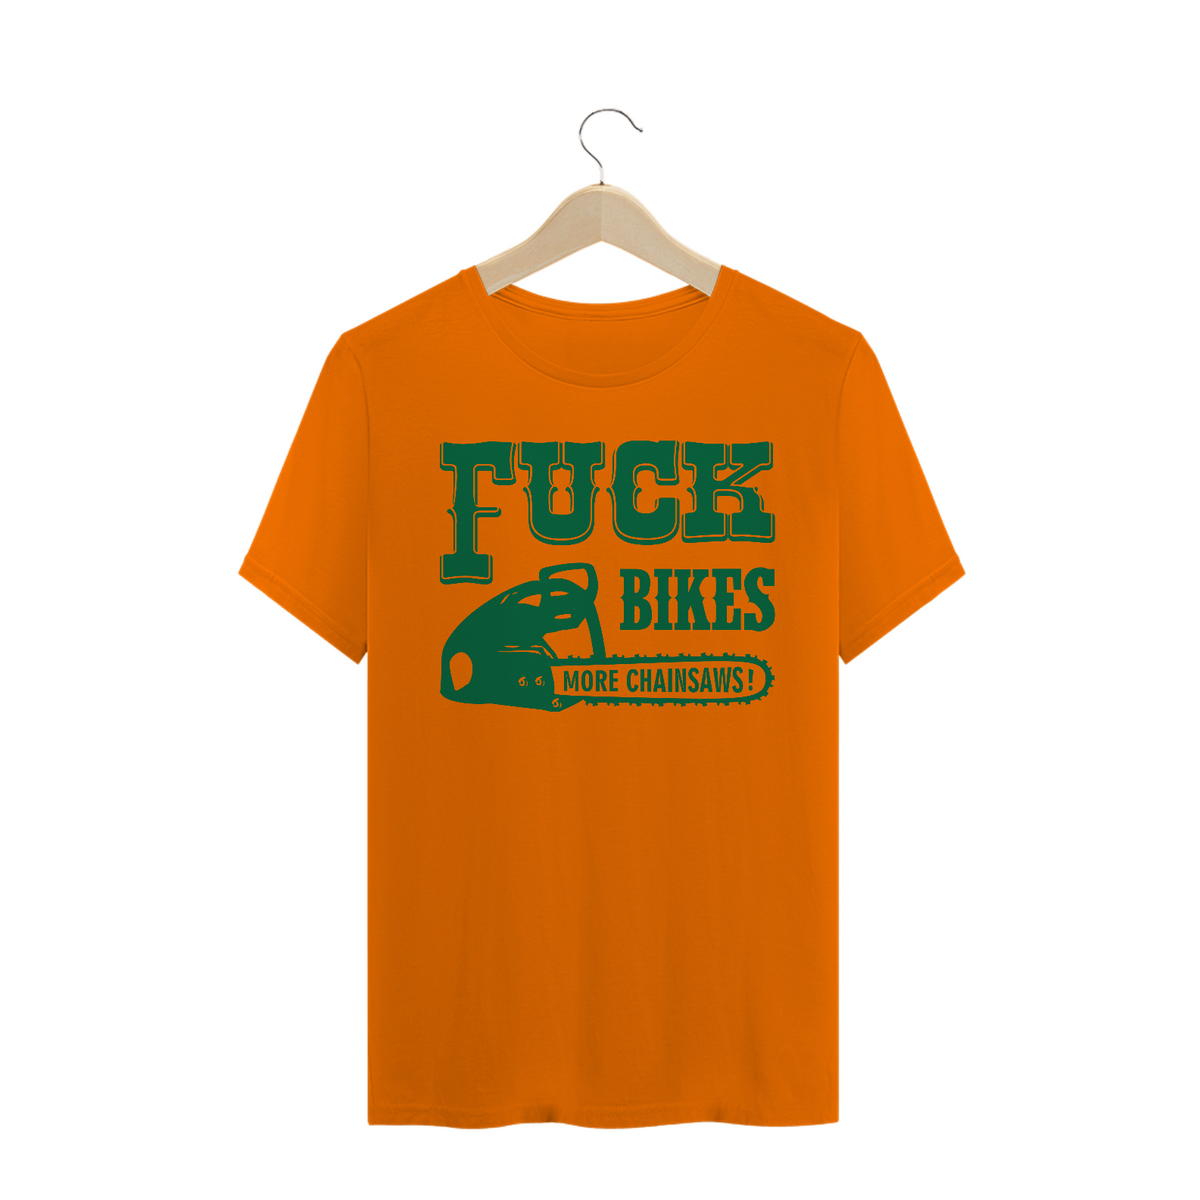 Nome do produto: Fuck Bikes More Chainsaws 